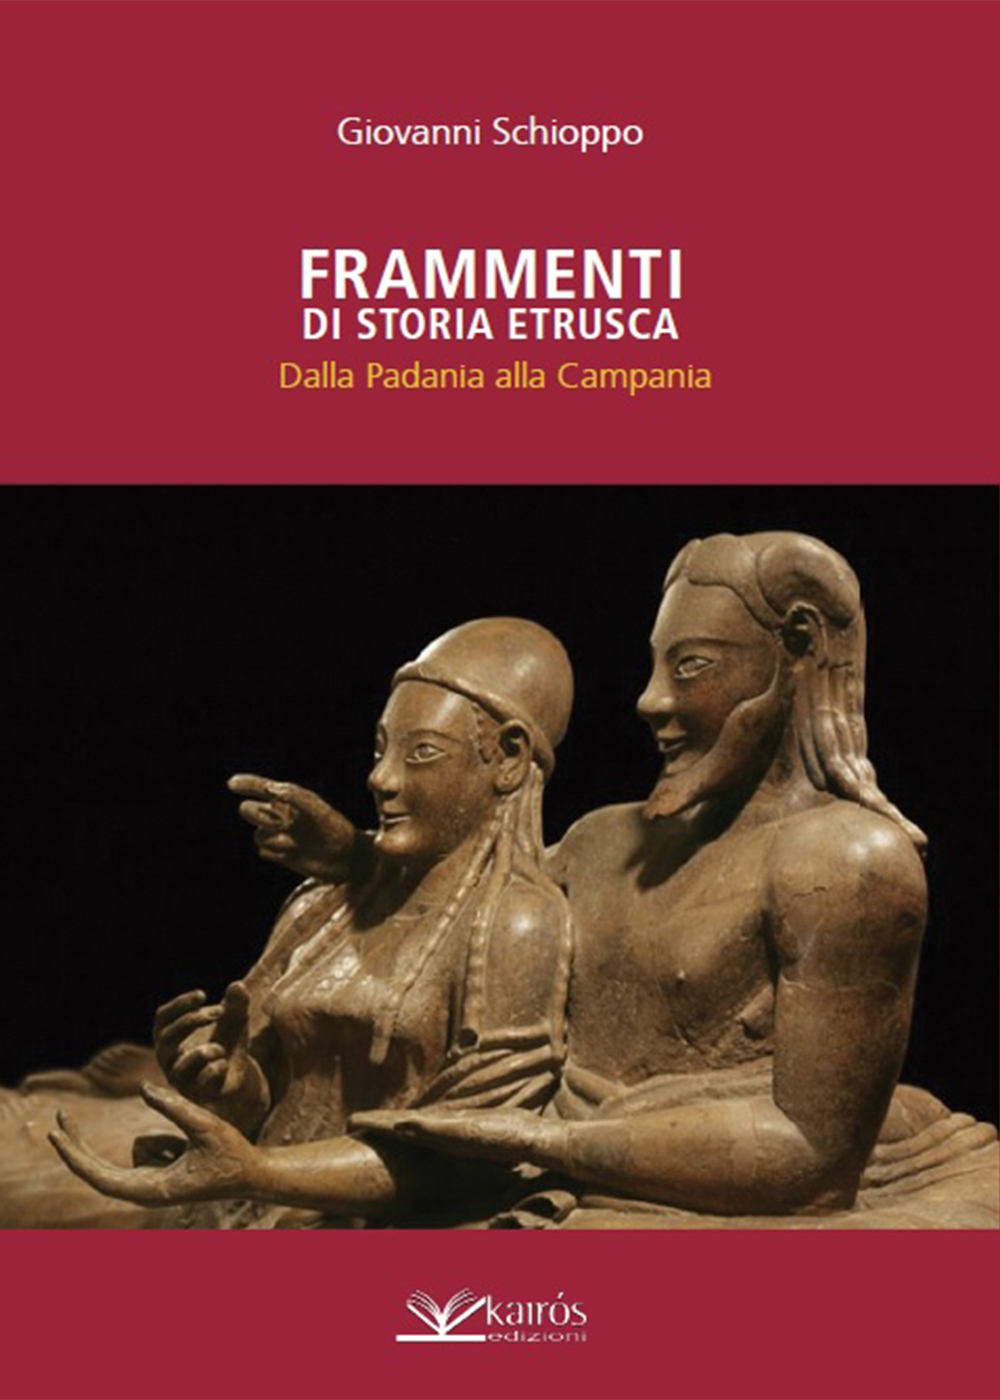 ‘Frammenti di storia etrusca’ di Giovanni Schioppo, edizioni Kairòs. Venerdì 18 ottobre alla libreria Raffaello di Napoli